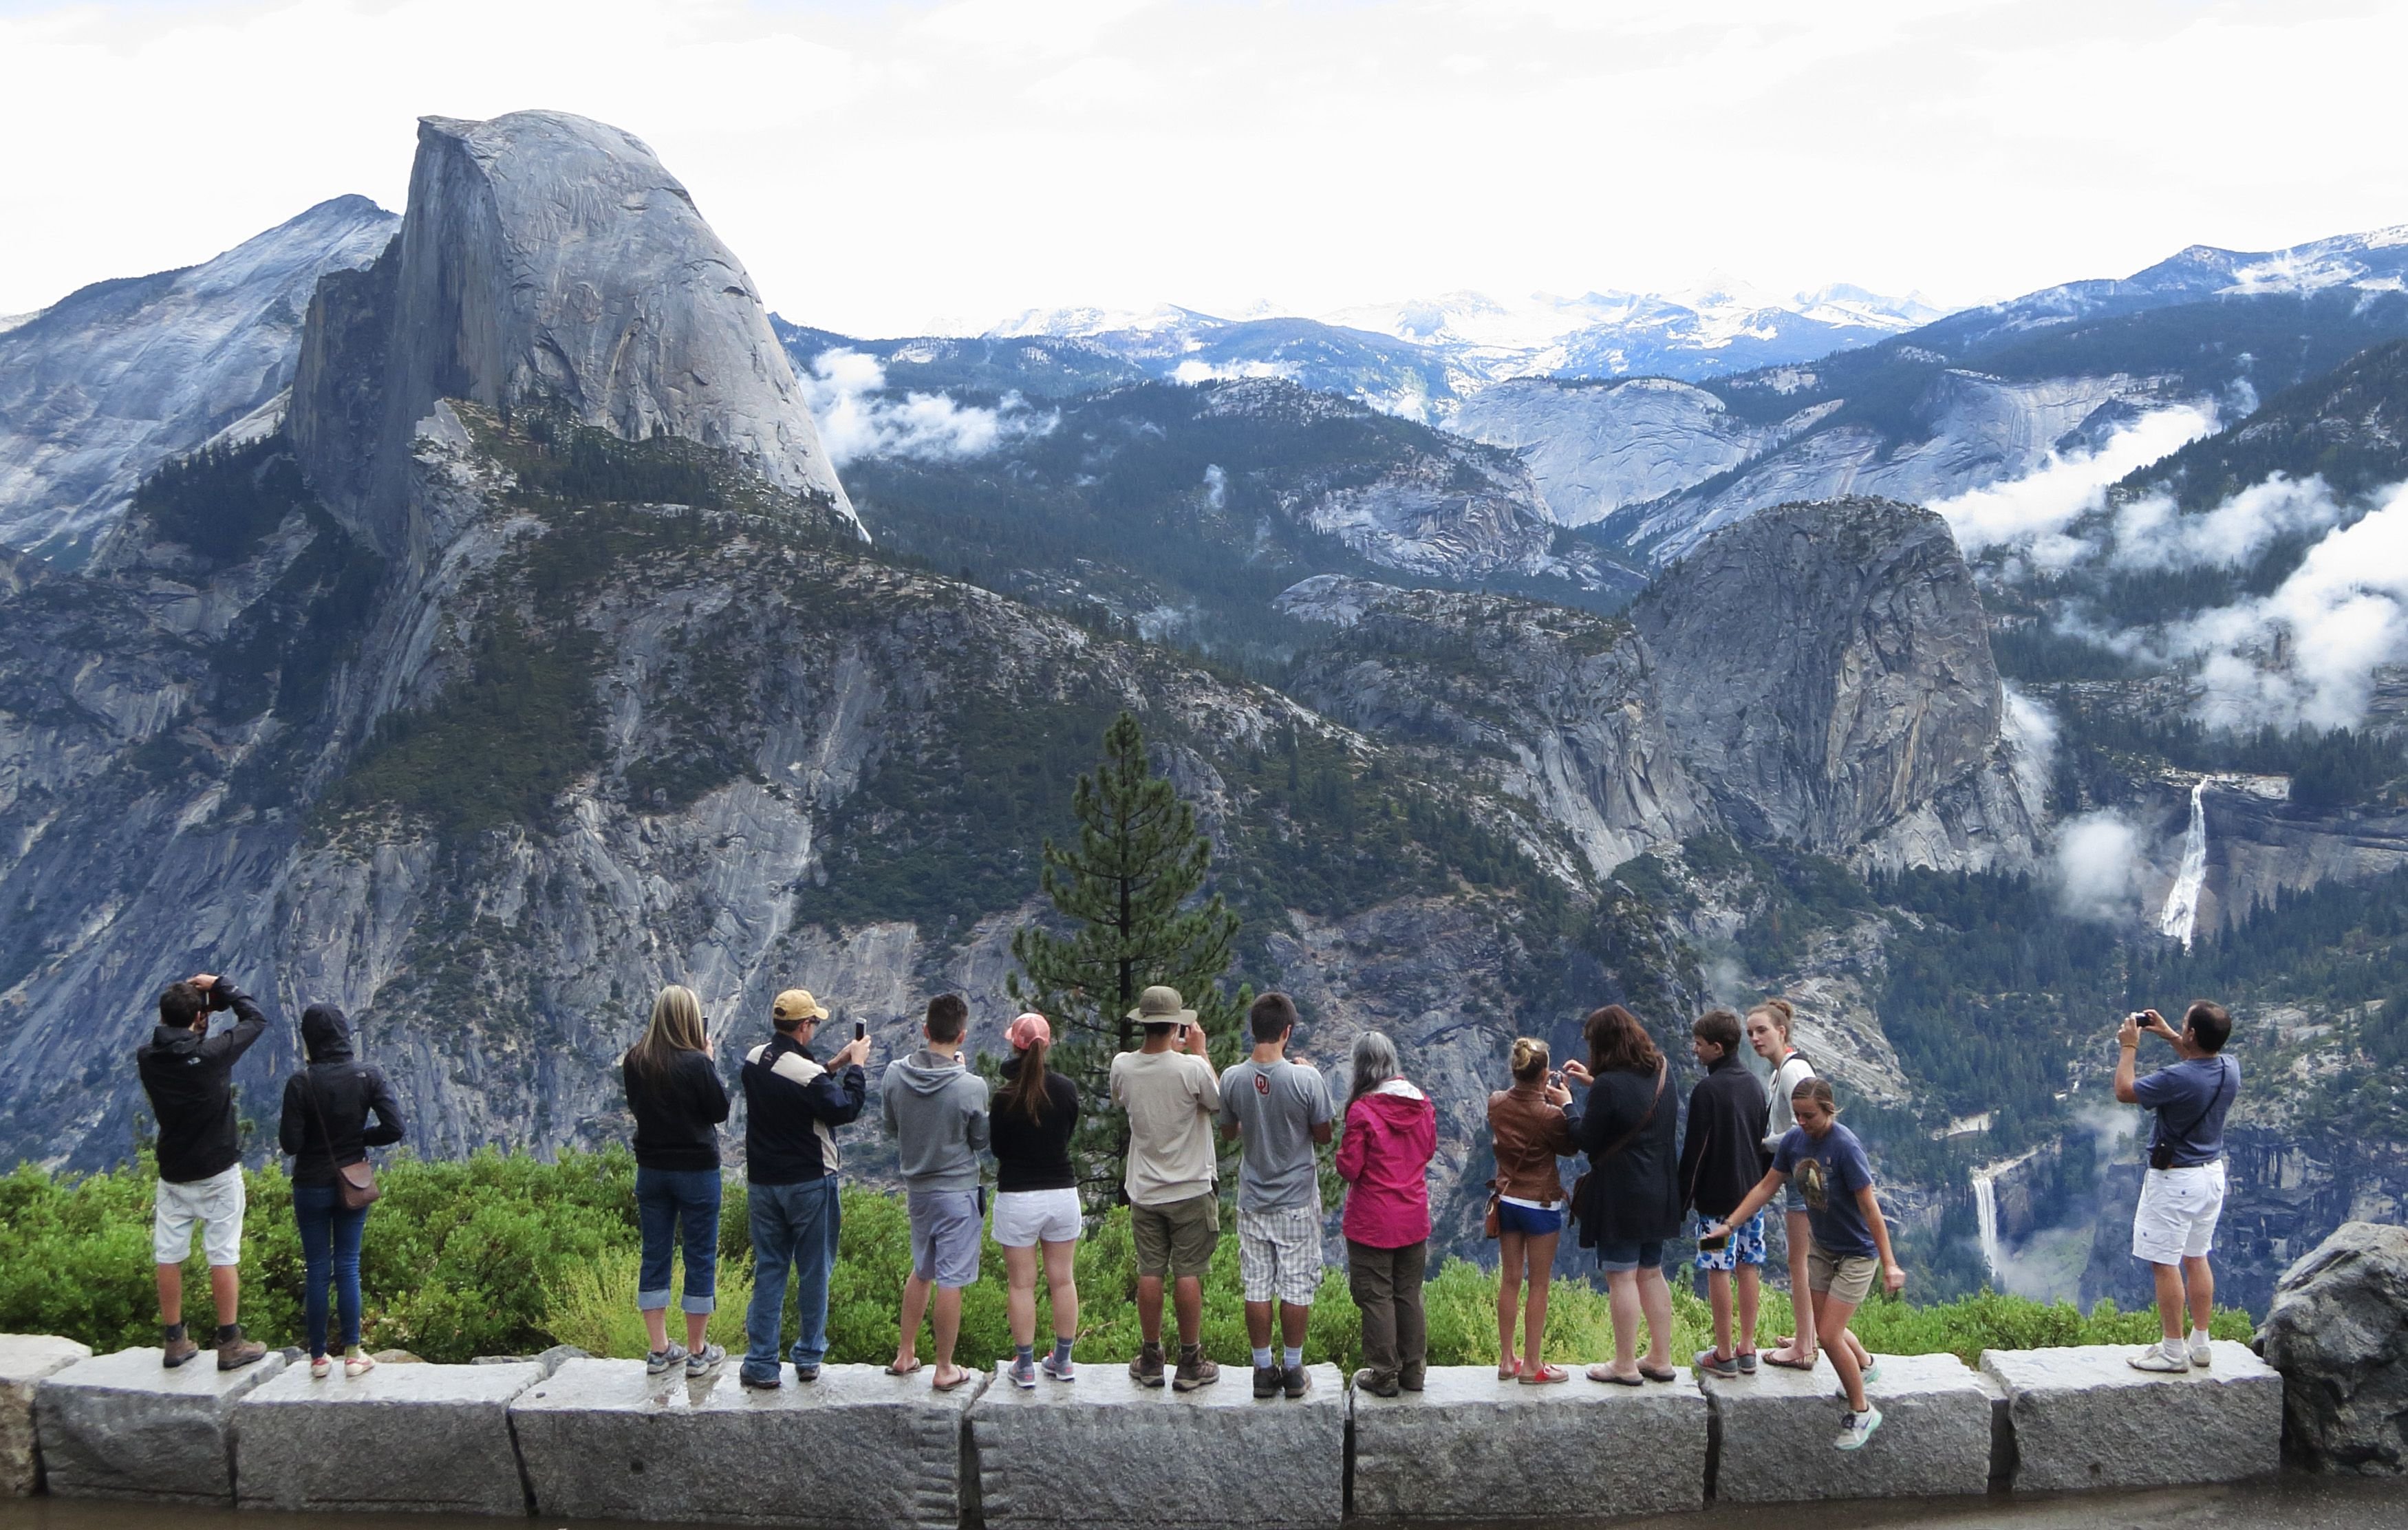 Нац парк Йосемити кемпинг. Глейшер парк туристы. Йосемити туристы. Туристы в национальном парке. Включи национальный парк